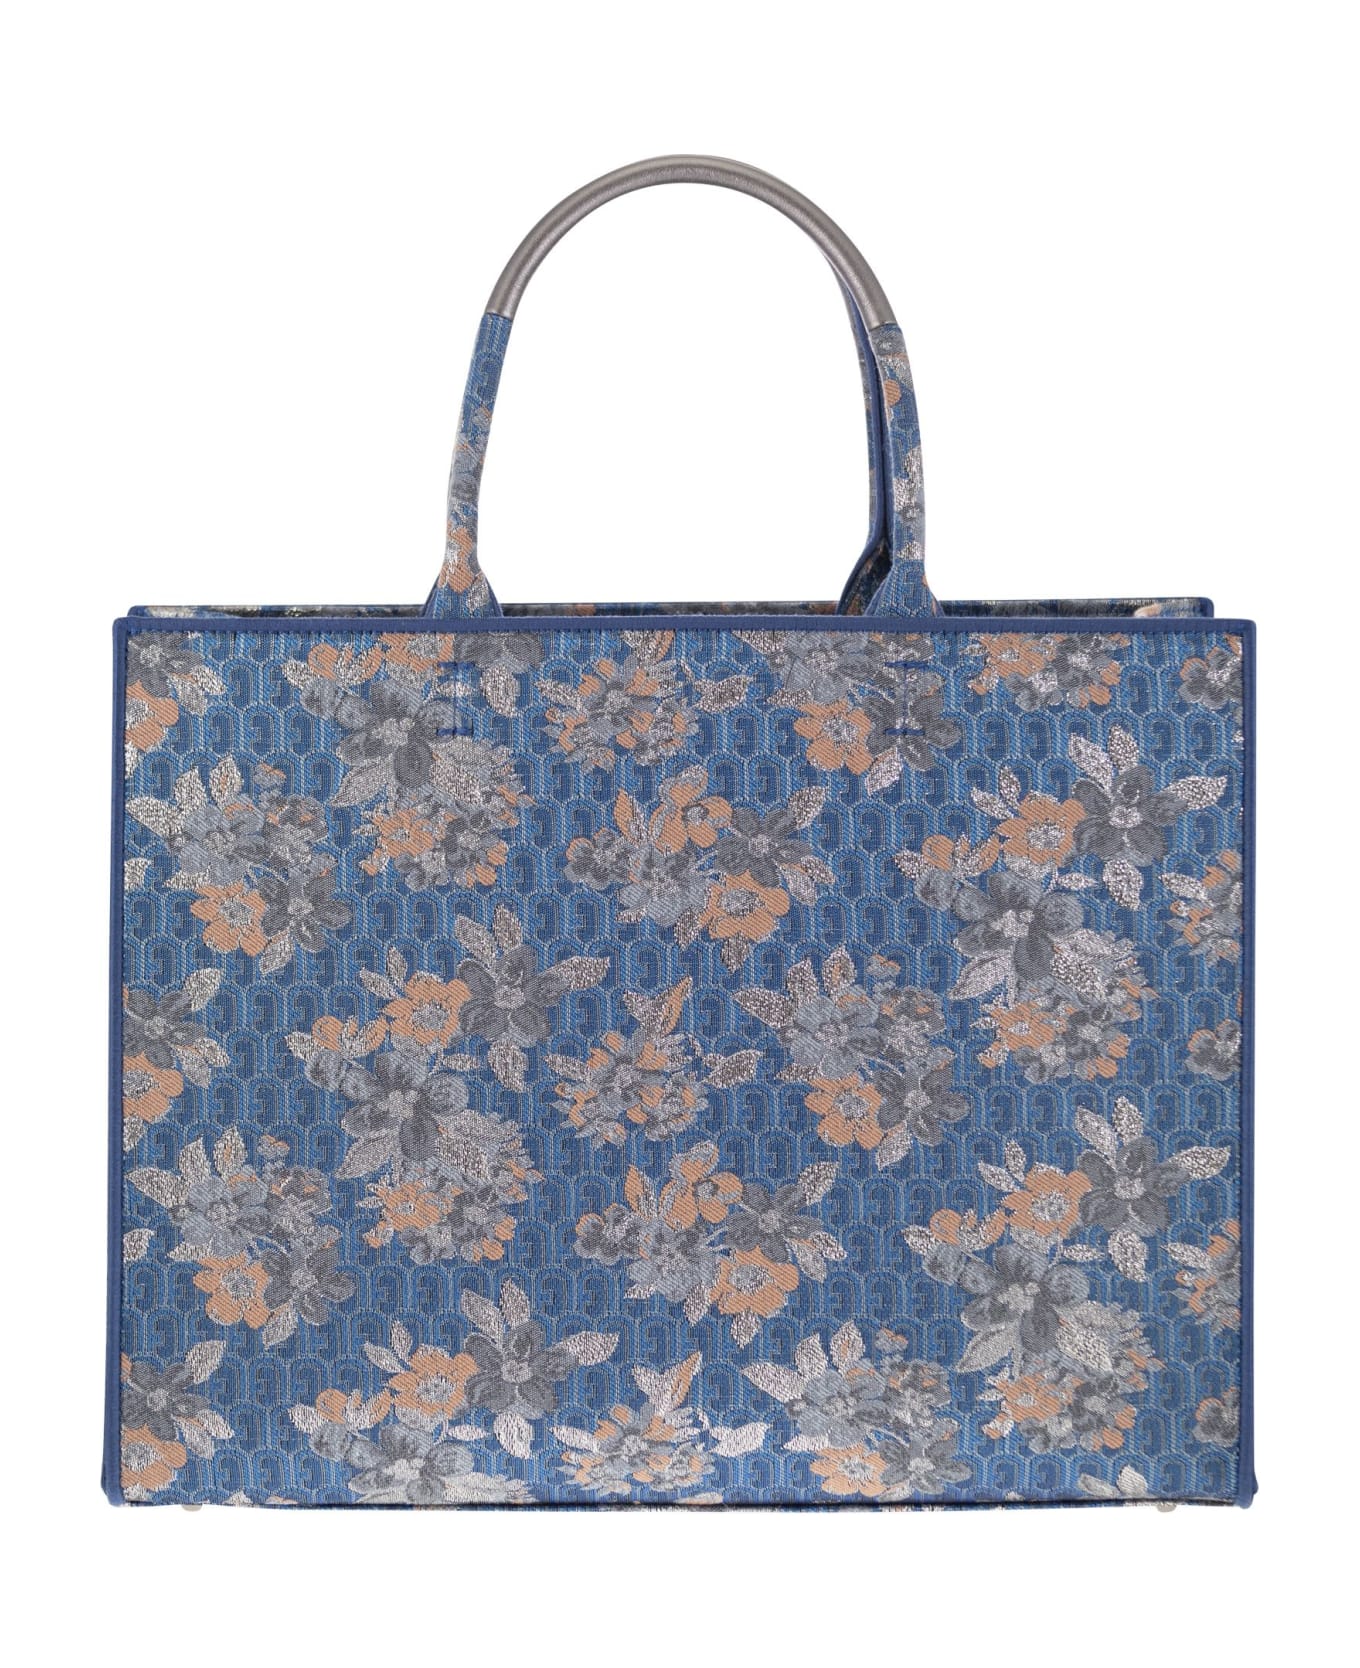 Furla Multicolor Fabric Bag - Light Blue